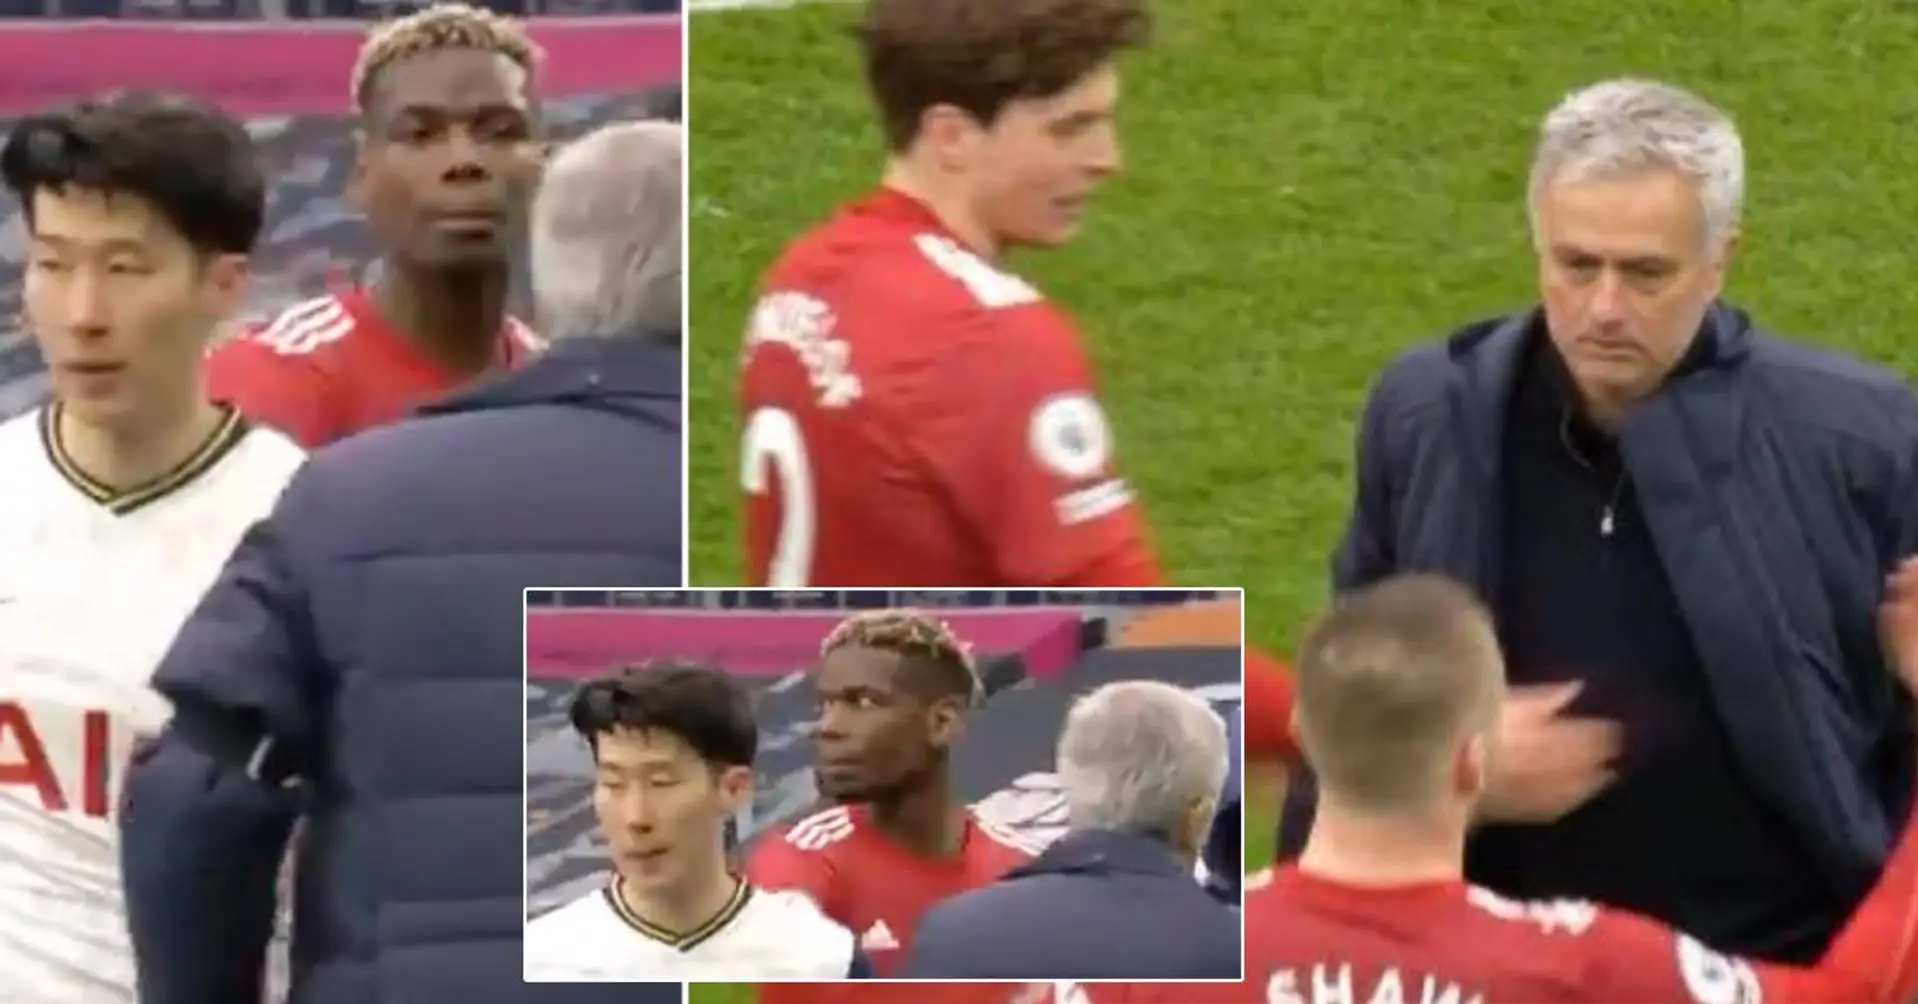 Unangenehmer Moment zwischen den "alten Feinden" Jose Mourinho, Paul Pogba und Luke Shaw vor der Kamera